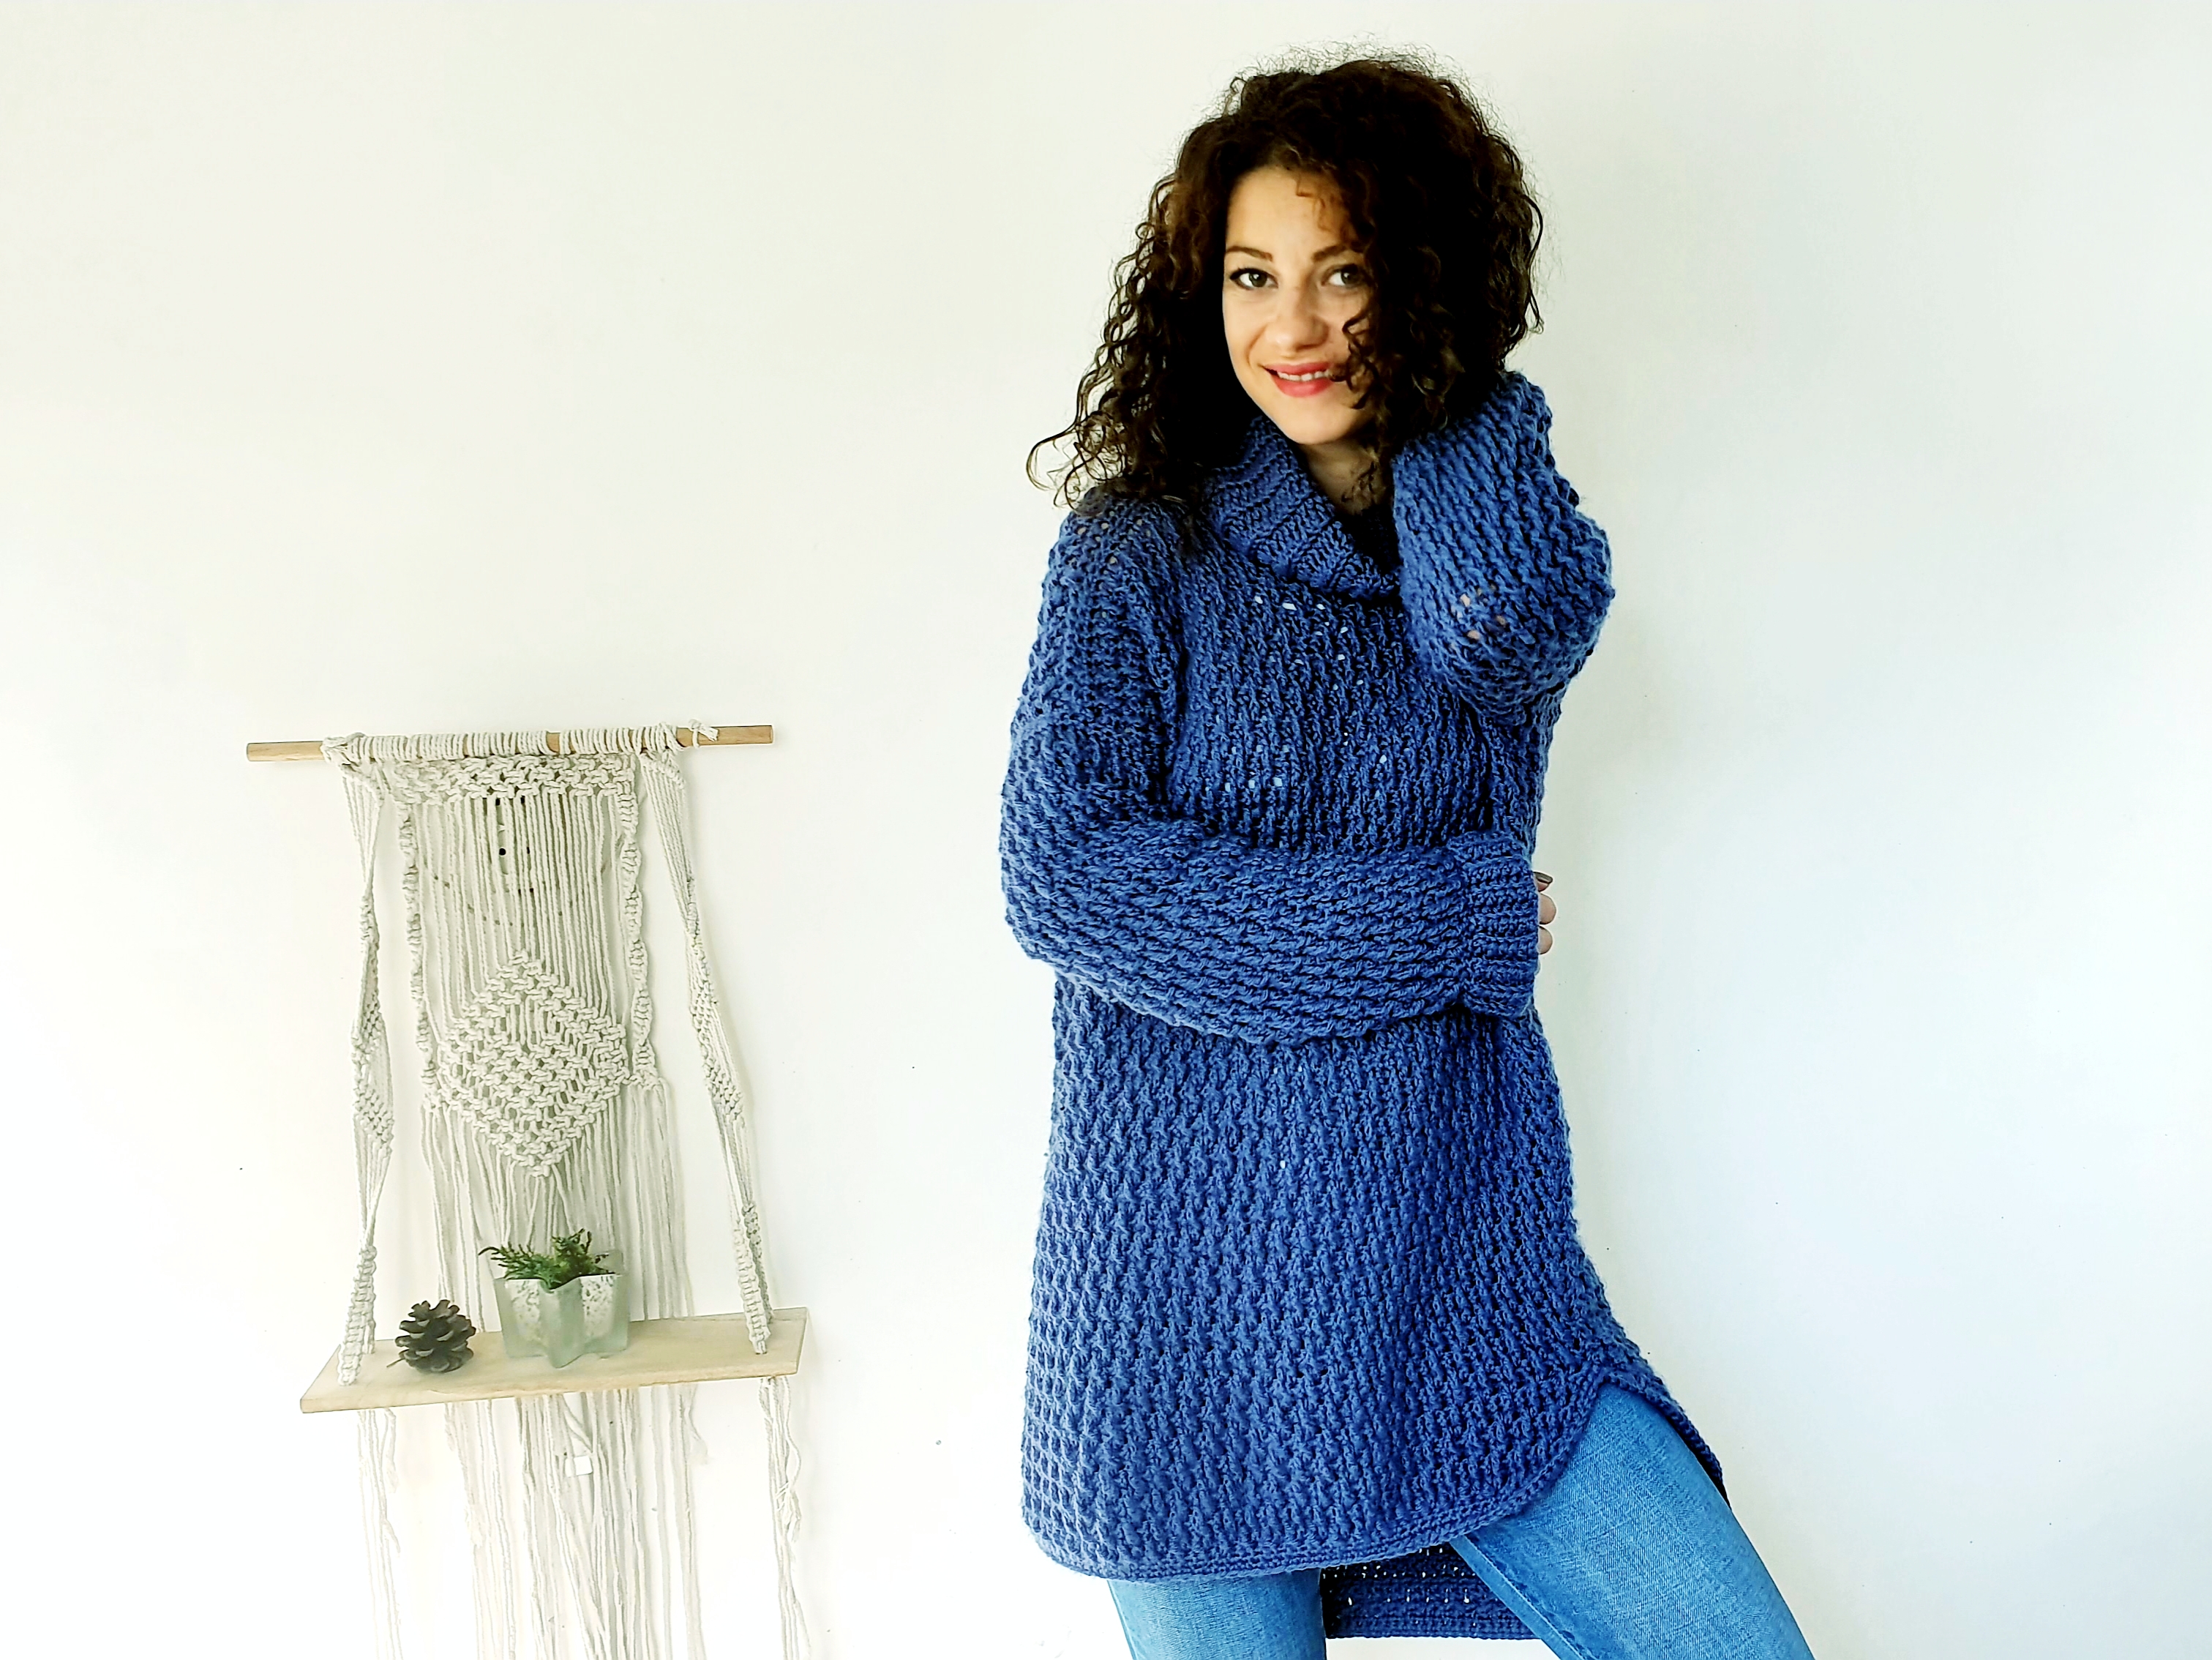 Coaty Sweater. Free Crochet Pattern & Video Tutorial